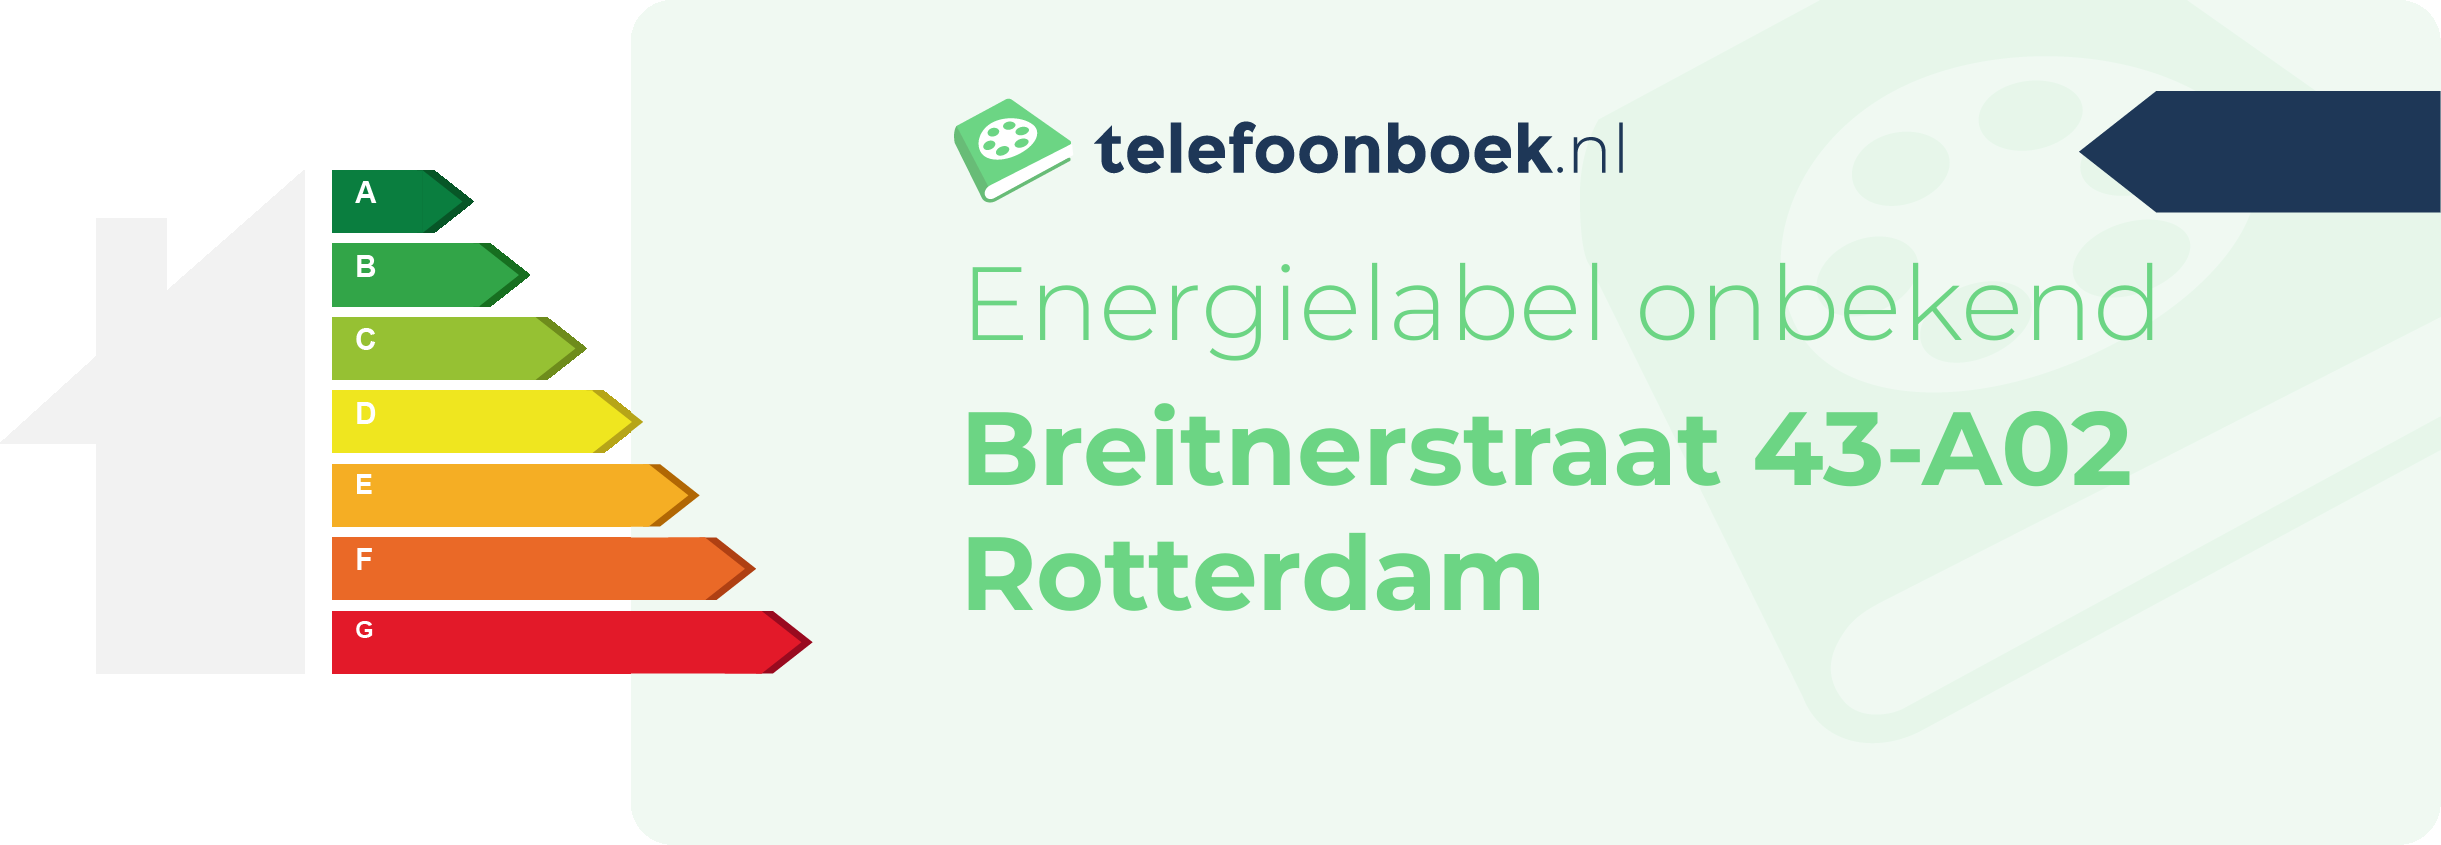 Energielabel Breitnerstraat 43-A02 Rotterdam